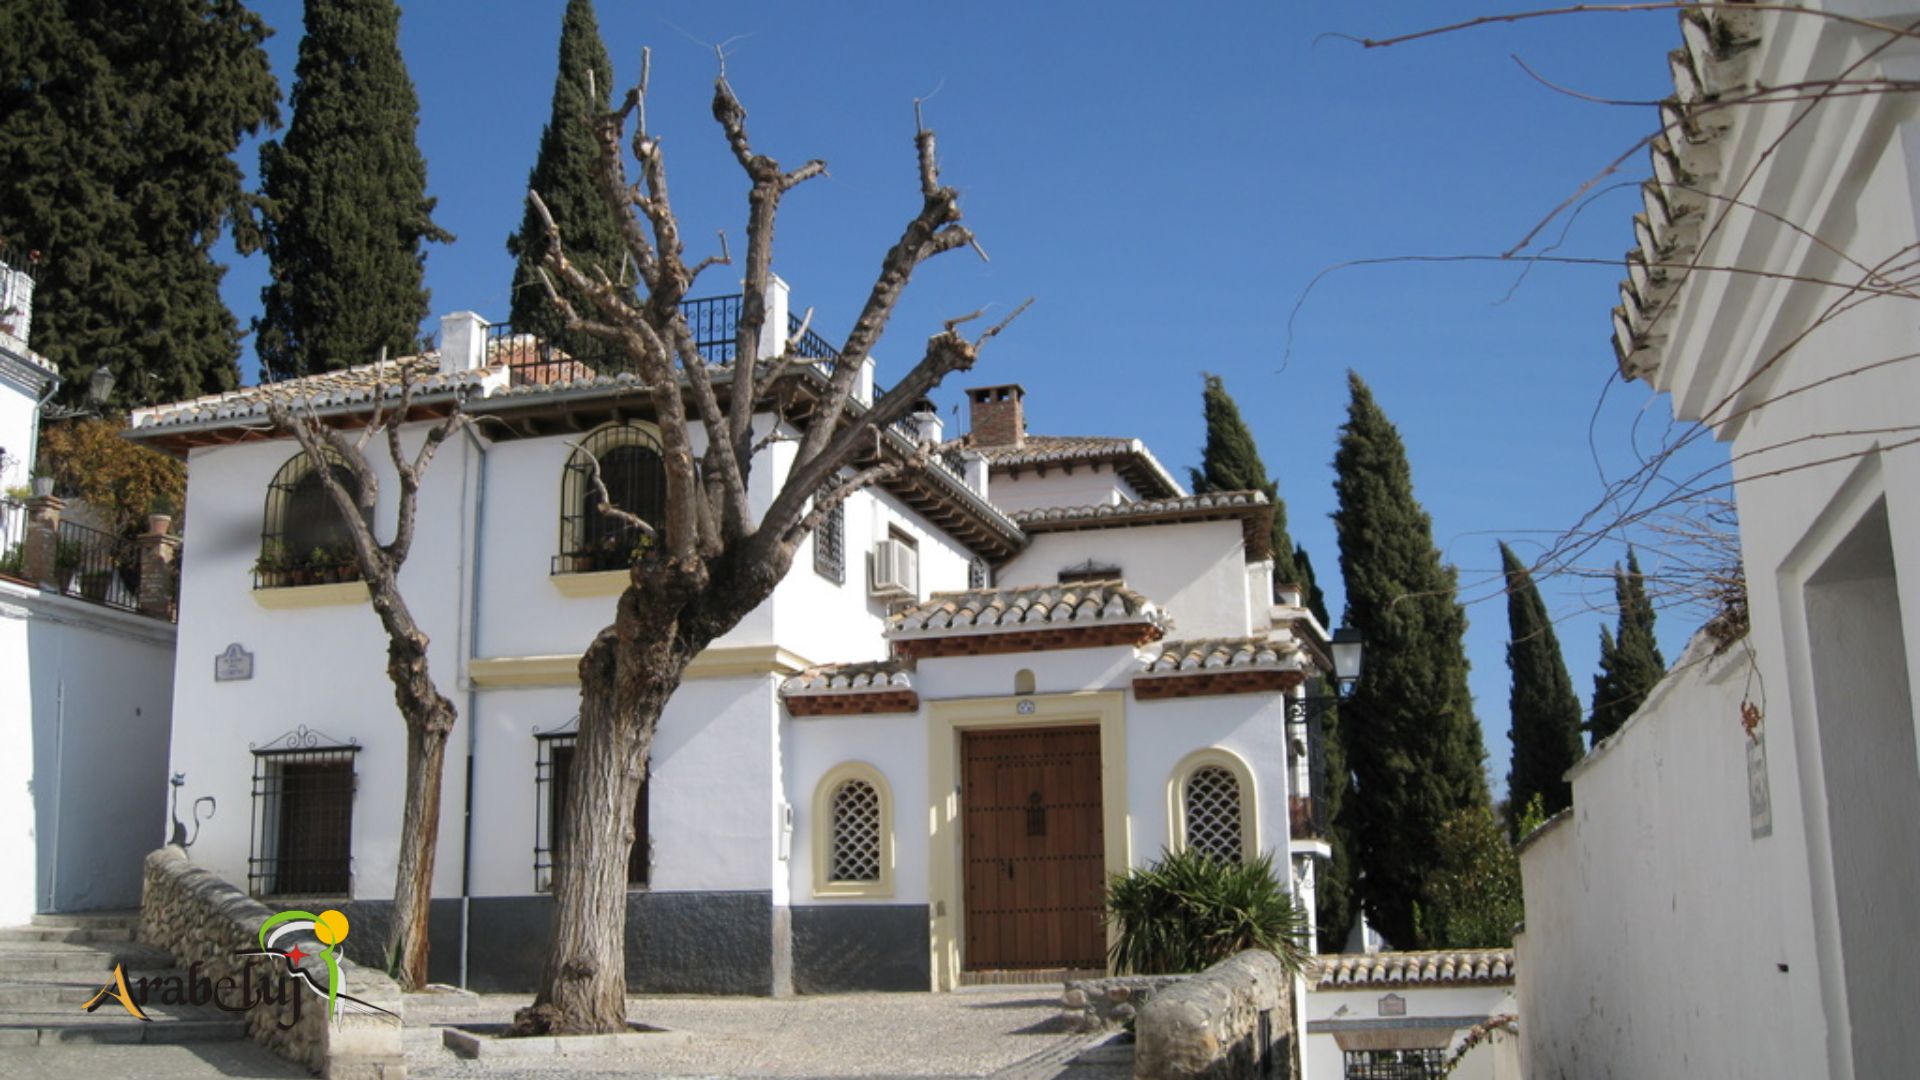 Barrio del albaicín de Granada